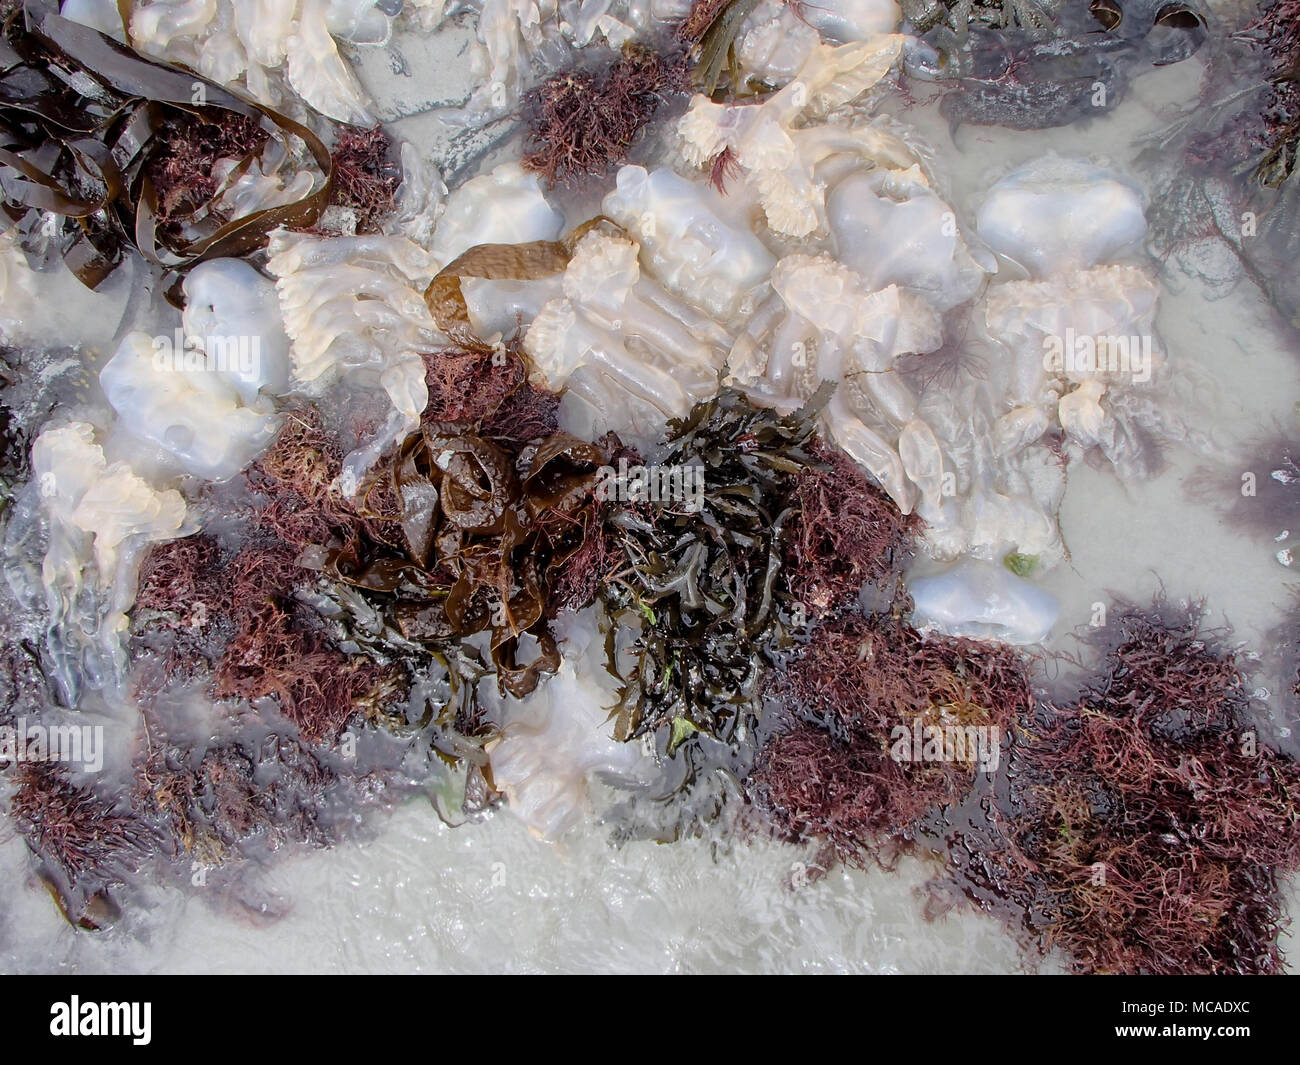 Multiple Stranded Jellyfish between Brown Seaweeds Stock Photo